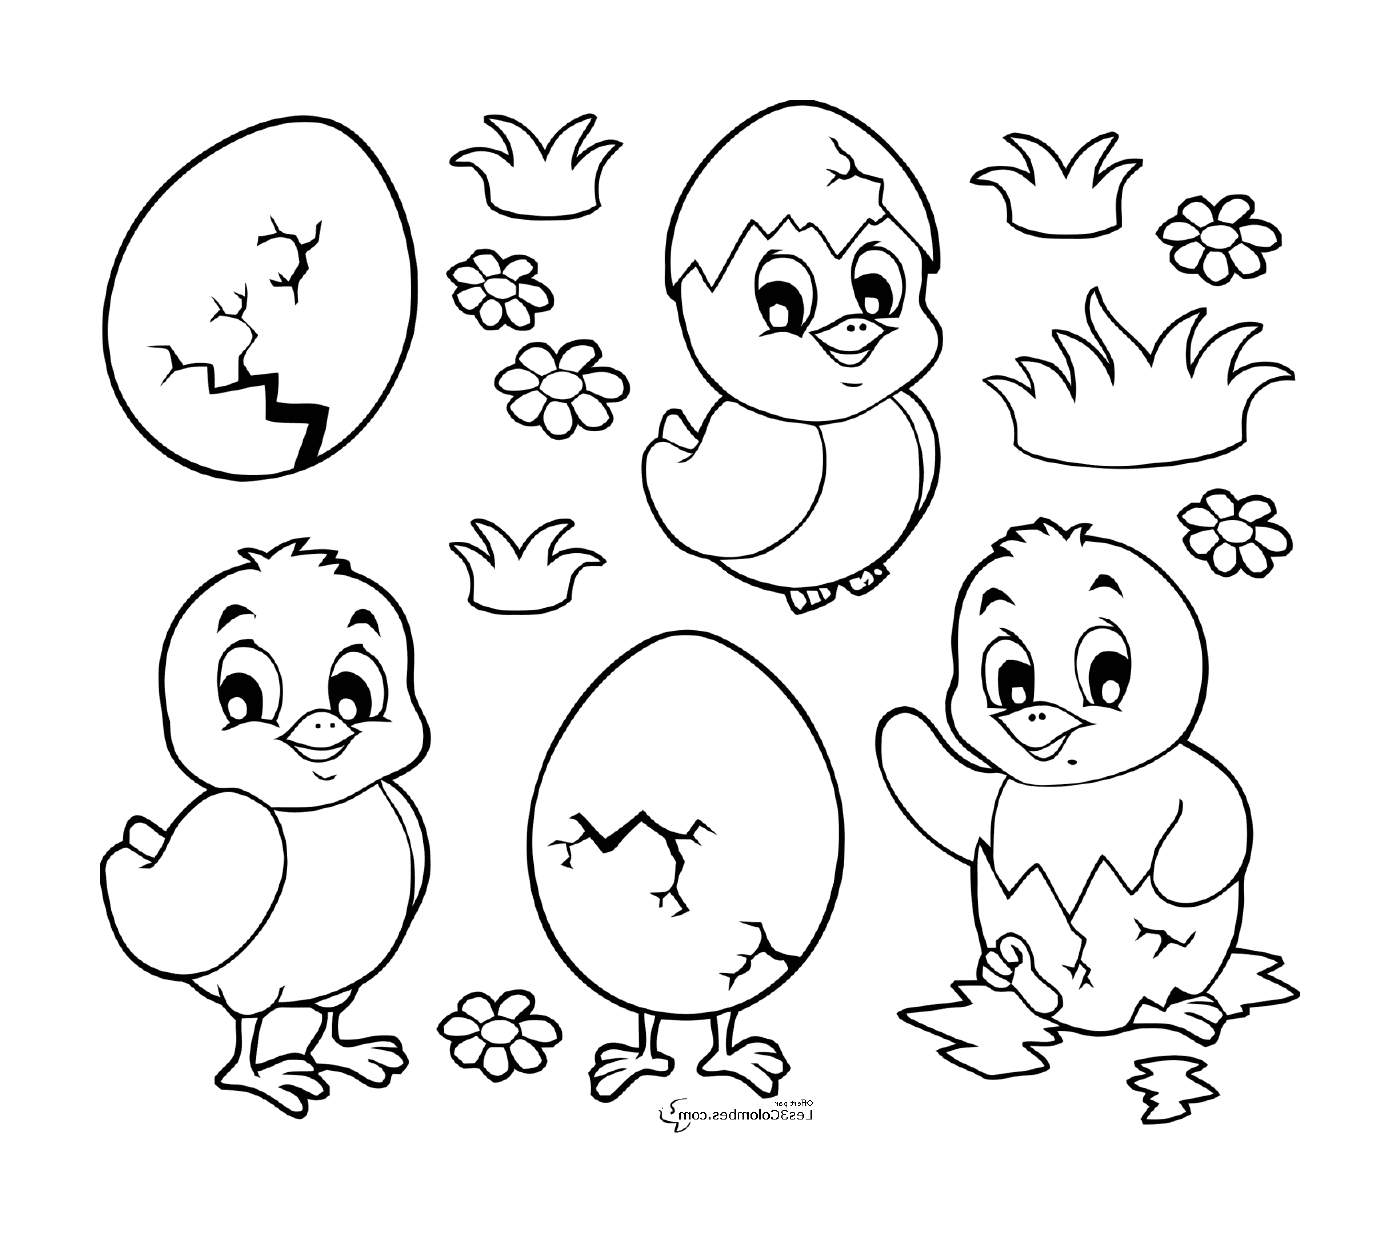  一群小鸡和复活节鸡蛋 